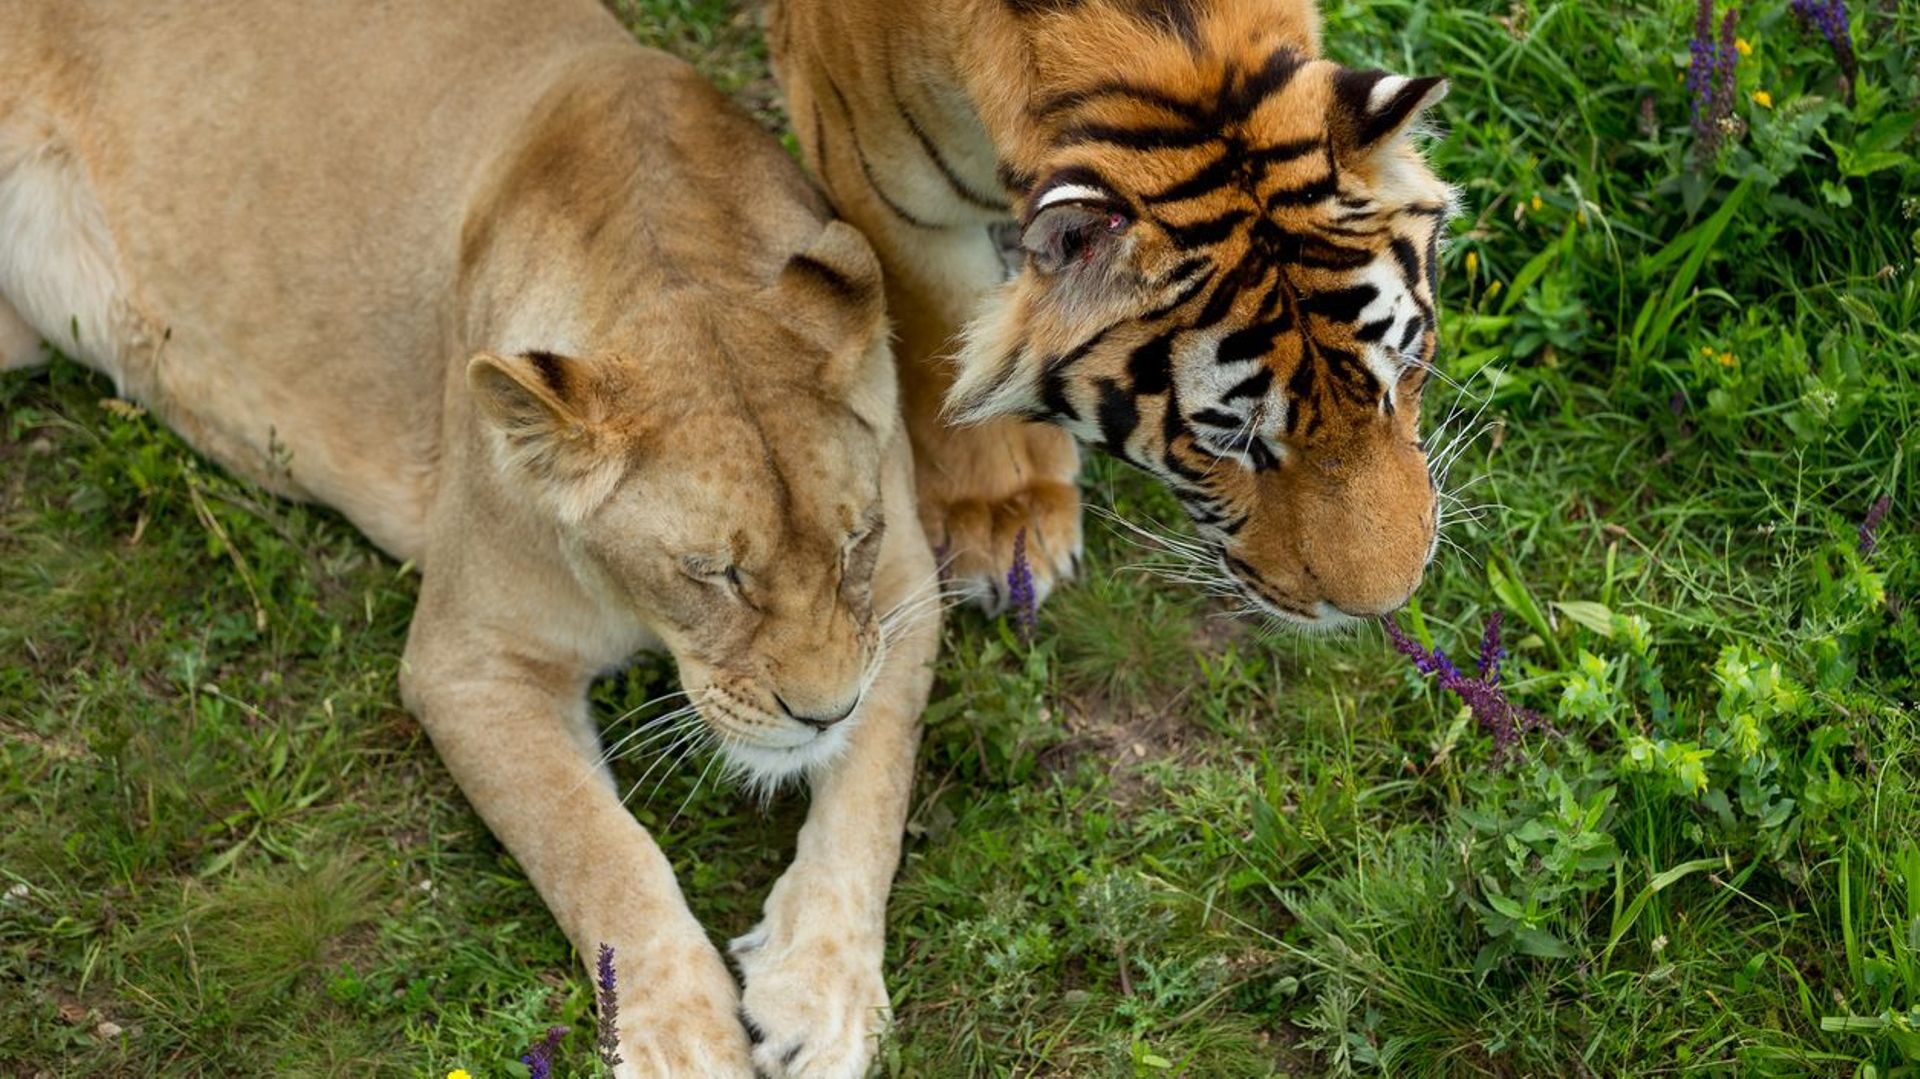 À la rencontre du ligre, un croisement entre un tigre et...un lion. Jusqu'où ira la cupidité de l'homme?